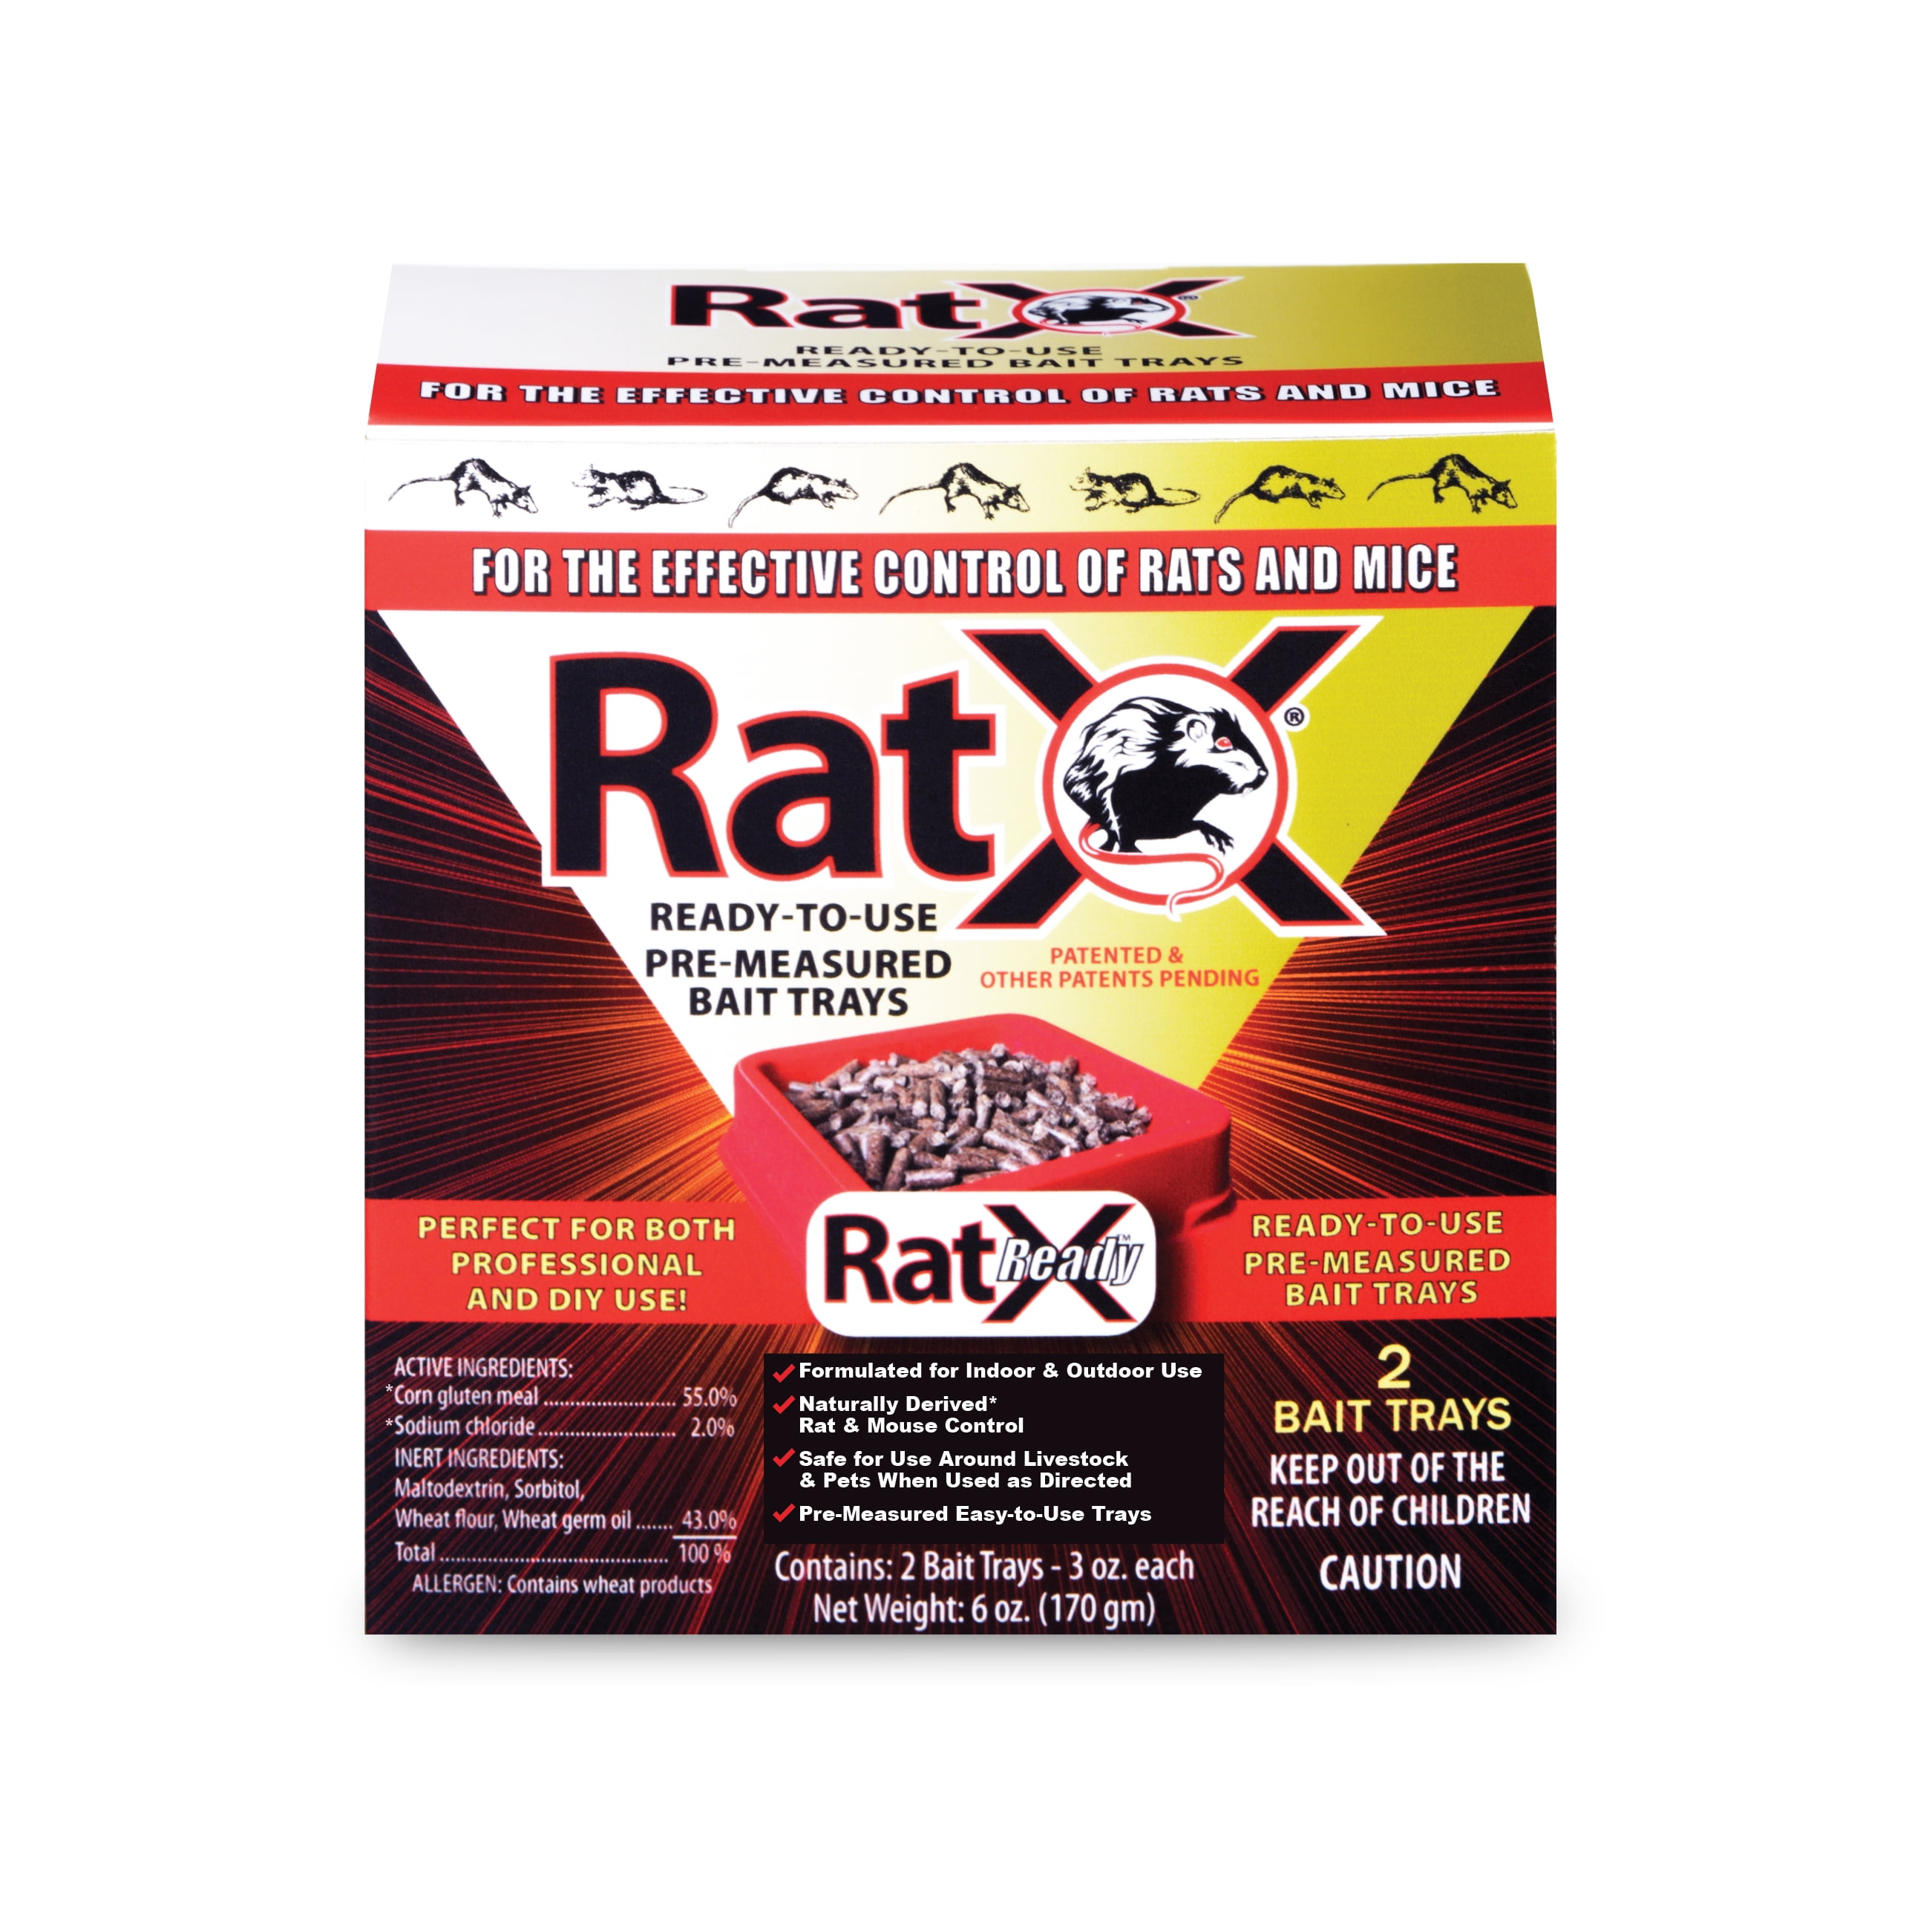 D-Con Rait & Mouse Bait Blocks II Rodent Control - 8 CT Reviews 2024